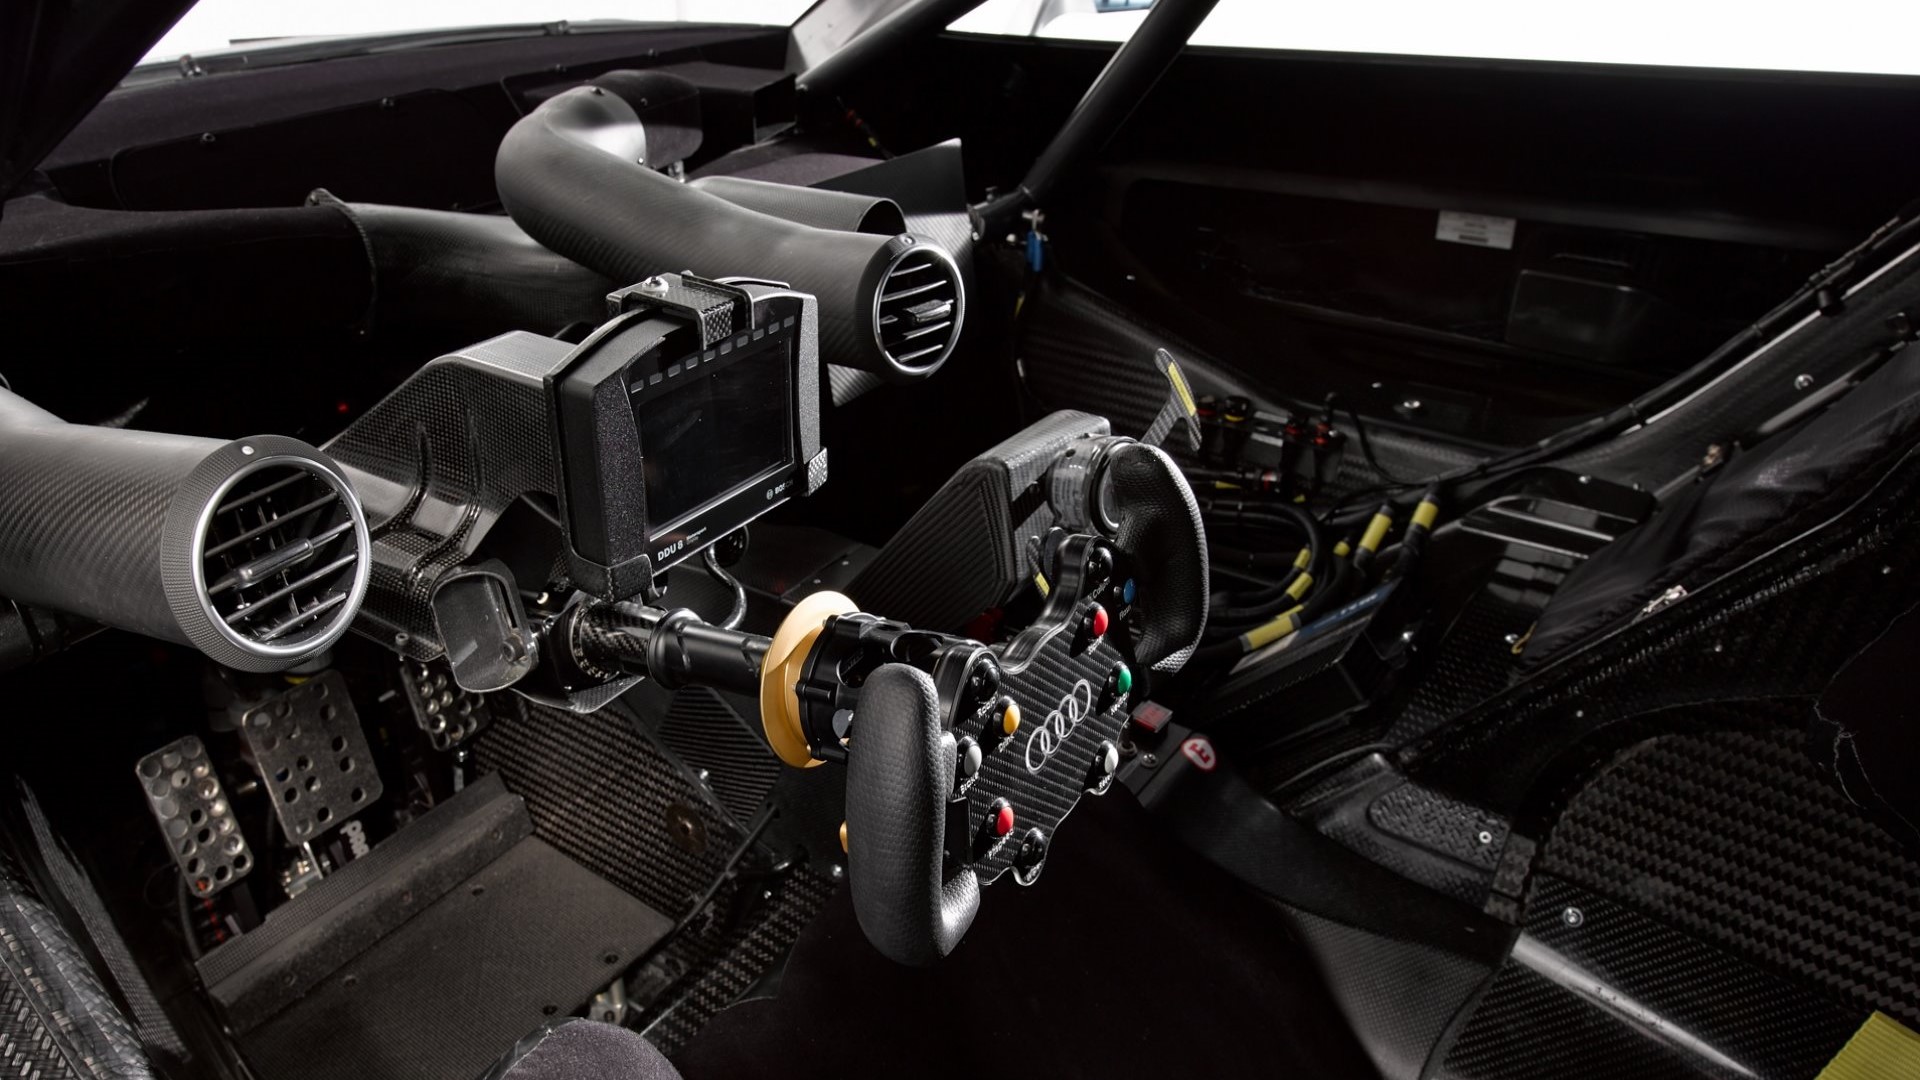 General 1920x1080 carbon fiber  dark background dtm black background race cars cockpit Audi